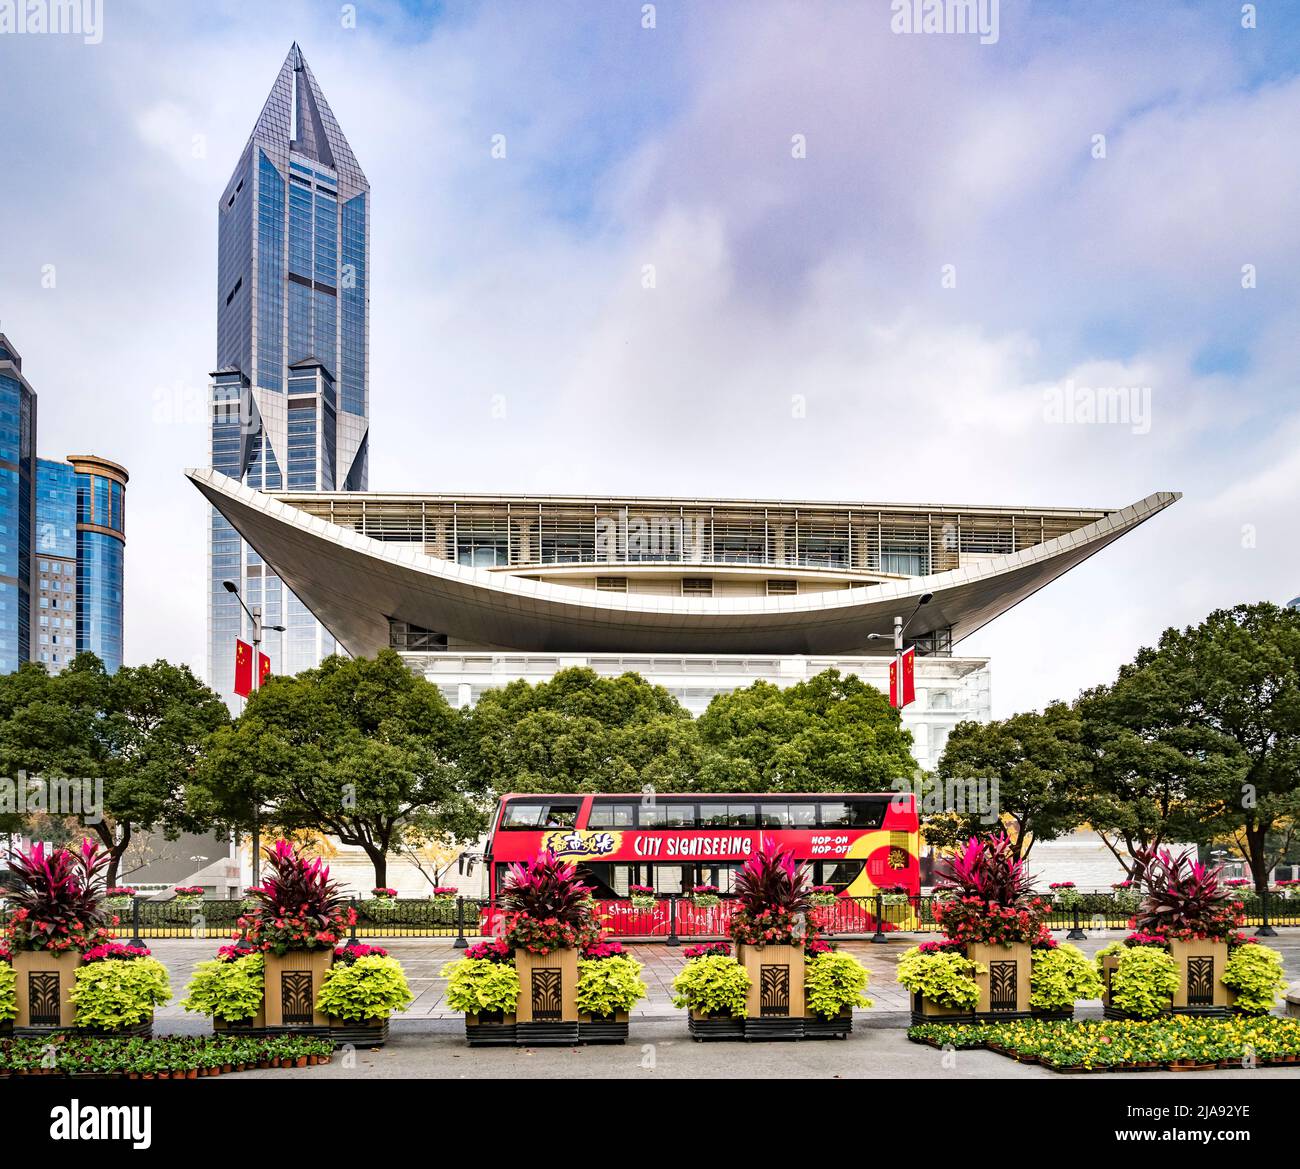 2 de diciembre de 2018: Shanghai, China - Centro de Exposiciones de Planificación Urbana de Shanghai desde la Plaza del Pueblo, con un autobús turístico en frente. Foto de stock